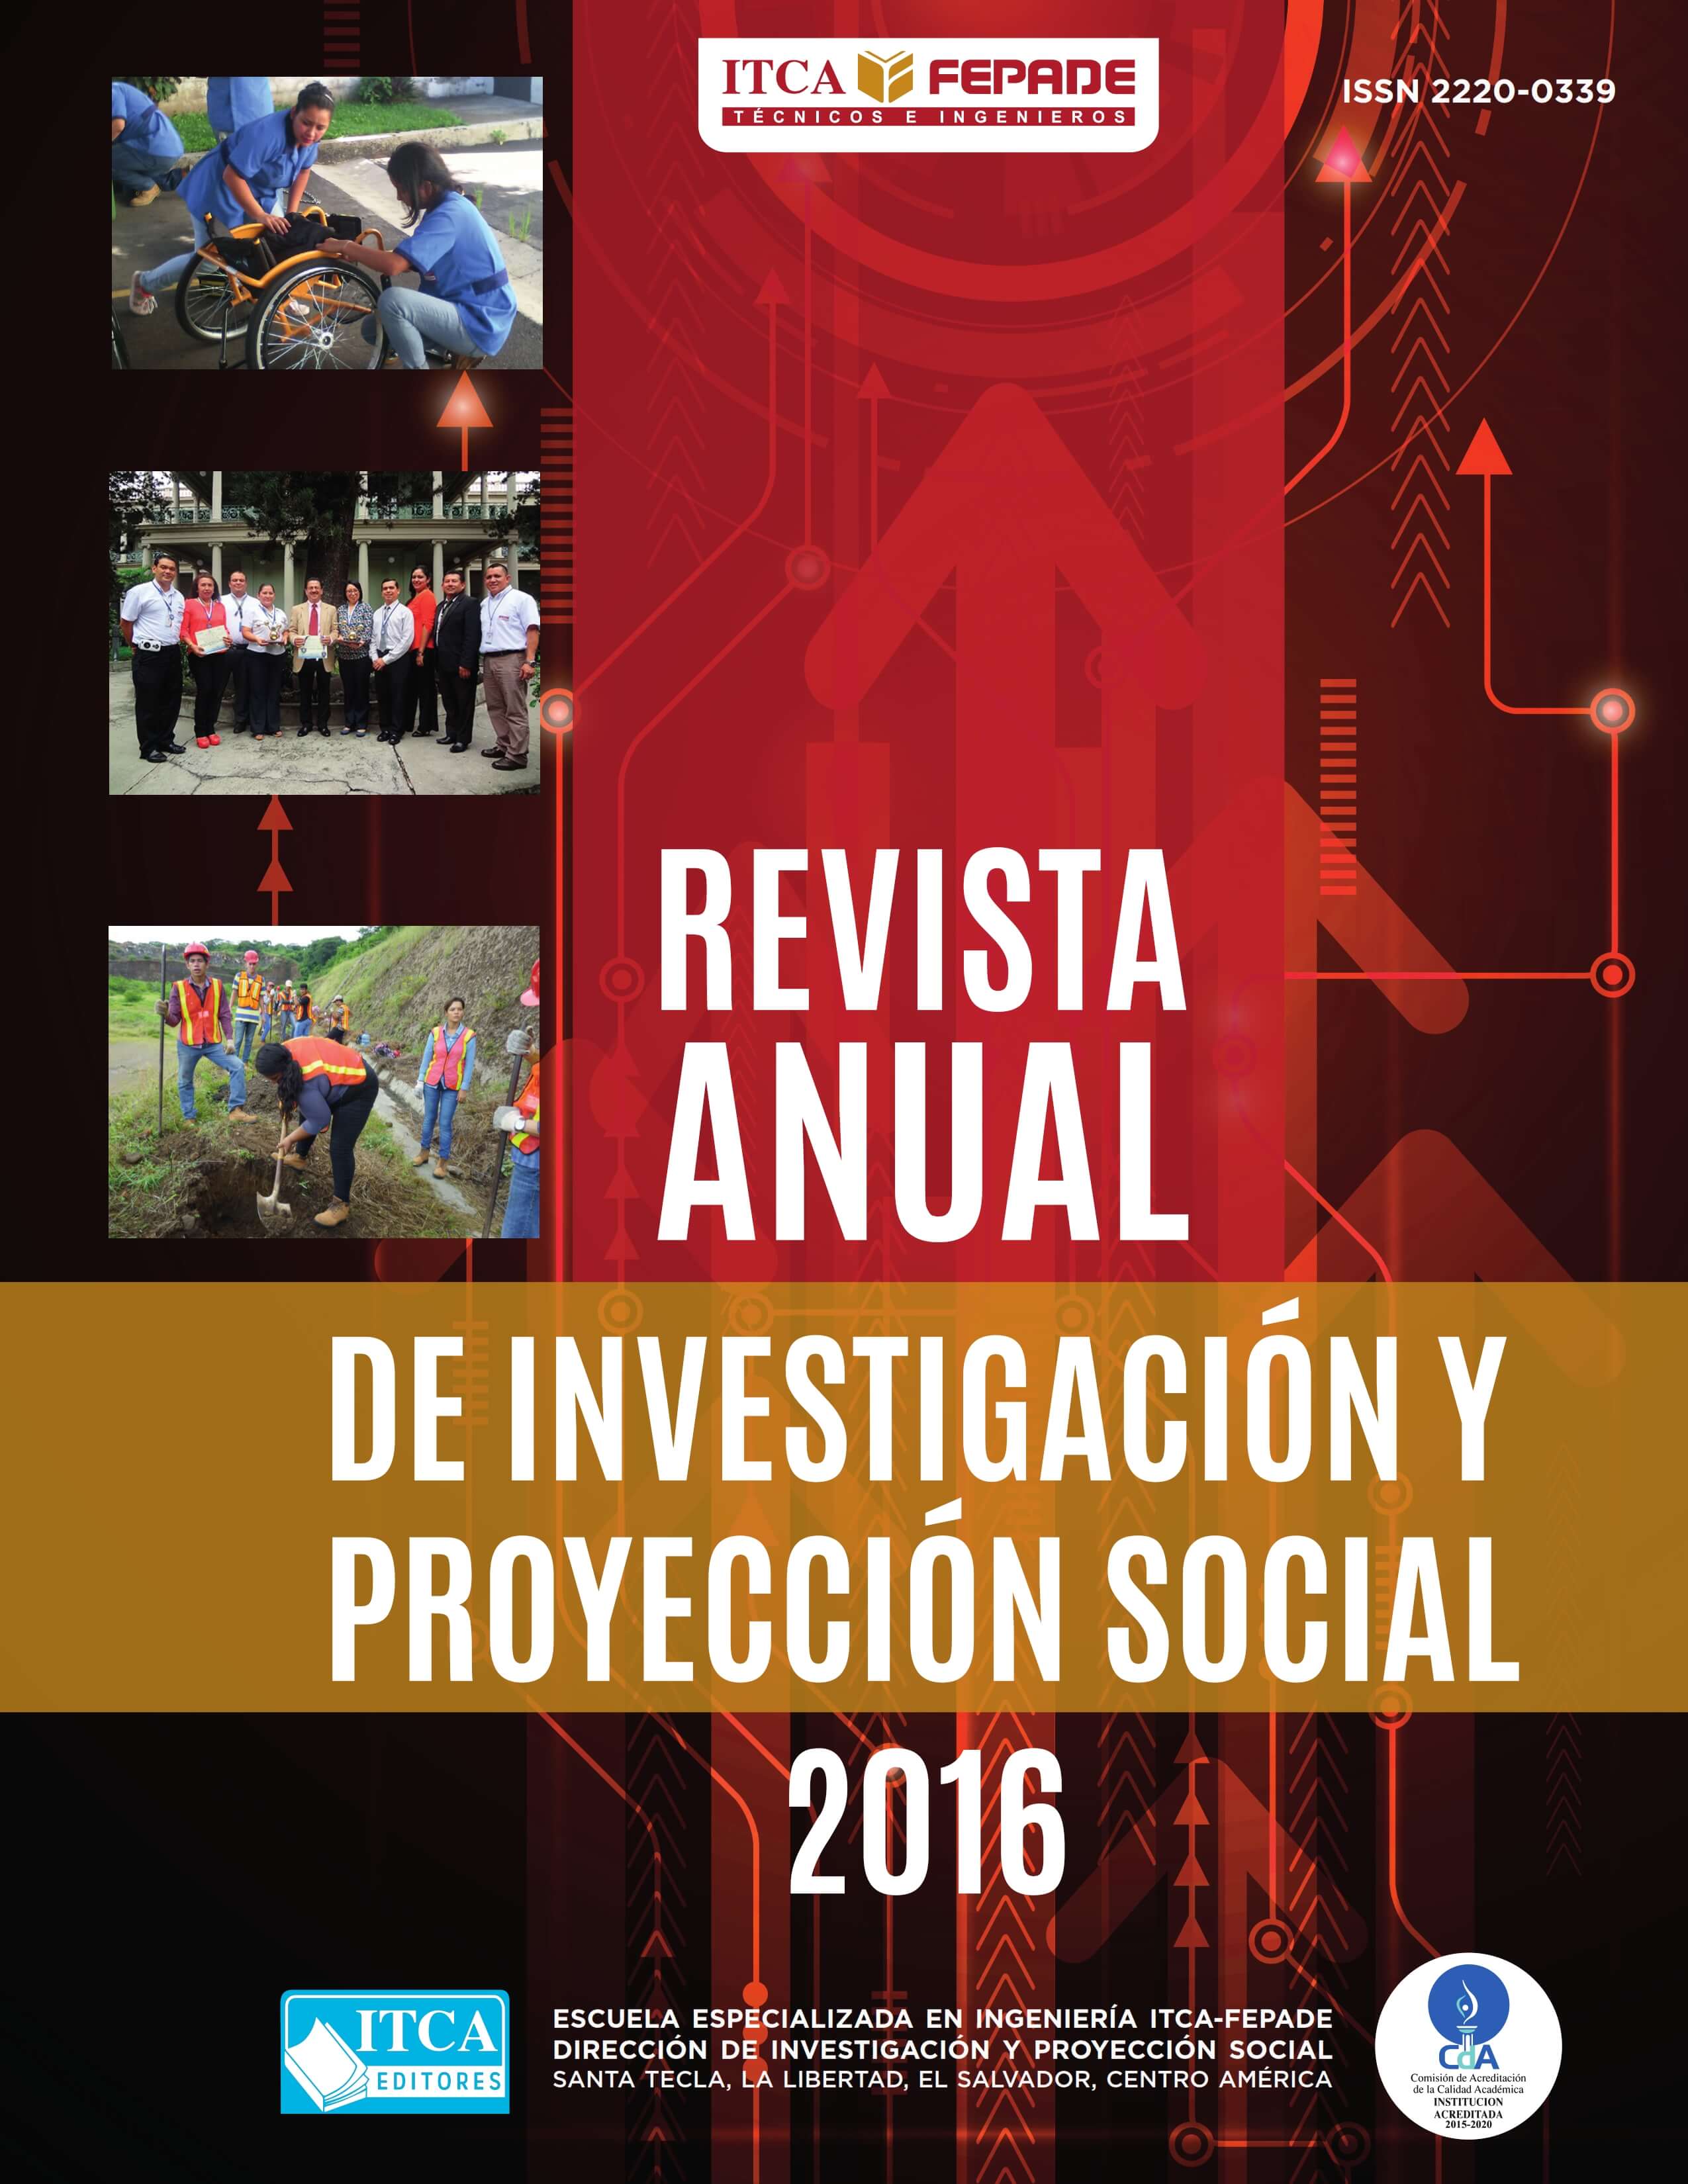 “REVISTA ANUAL DE INVESTIGACIÓN Y PROYECCIÓN SOCIAL, 2016”.